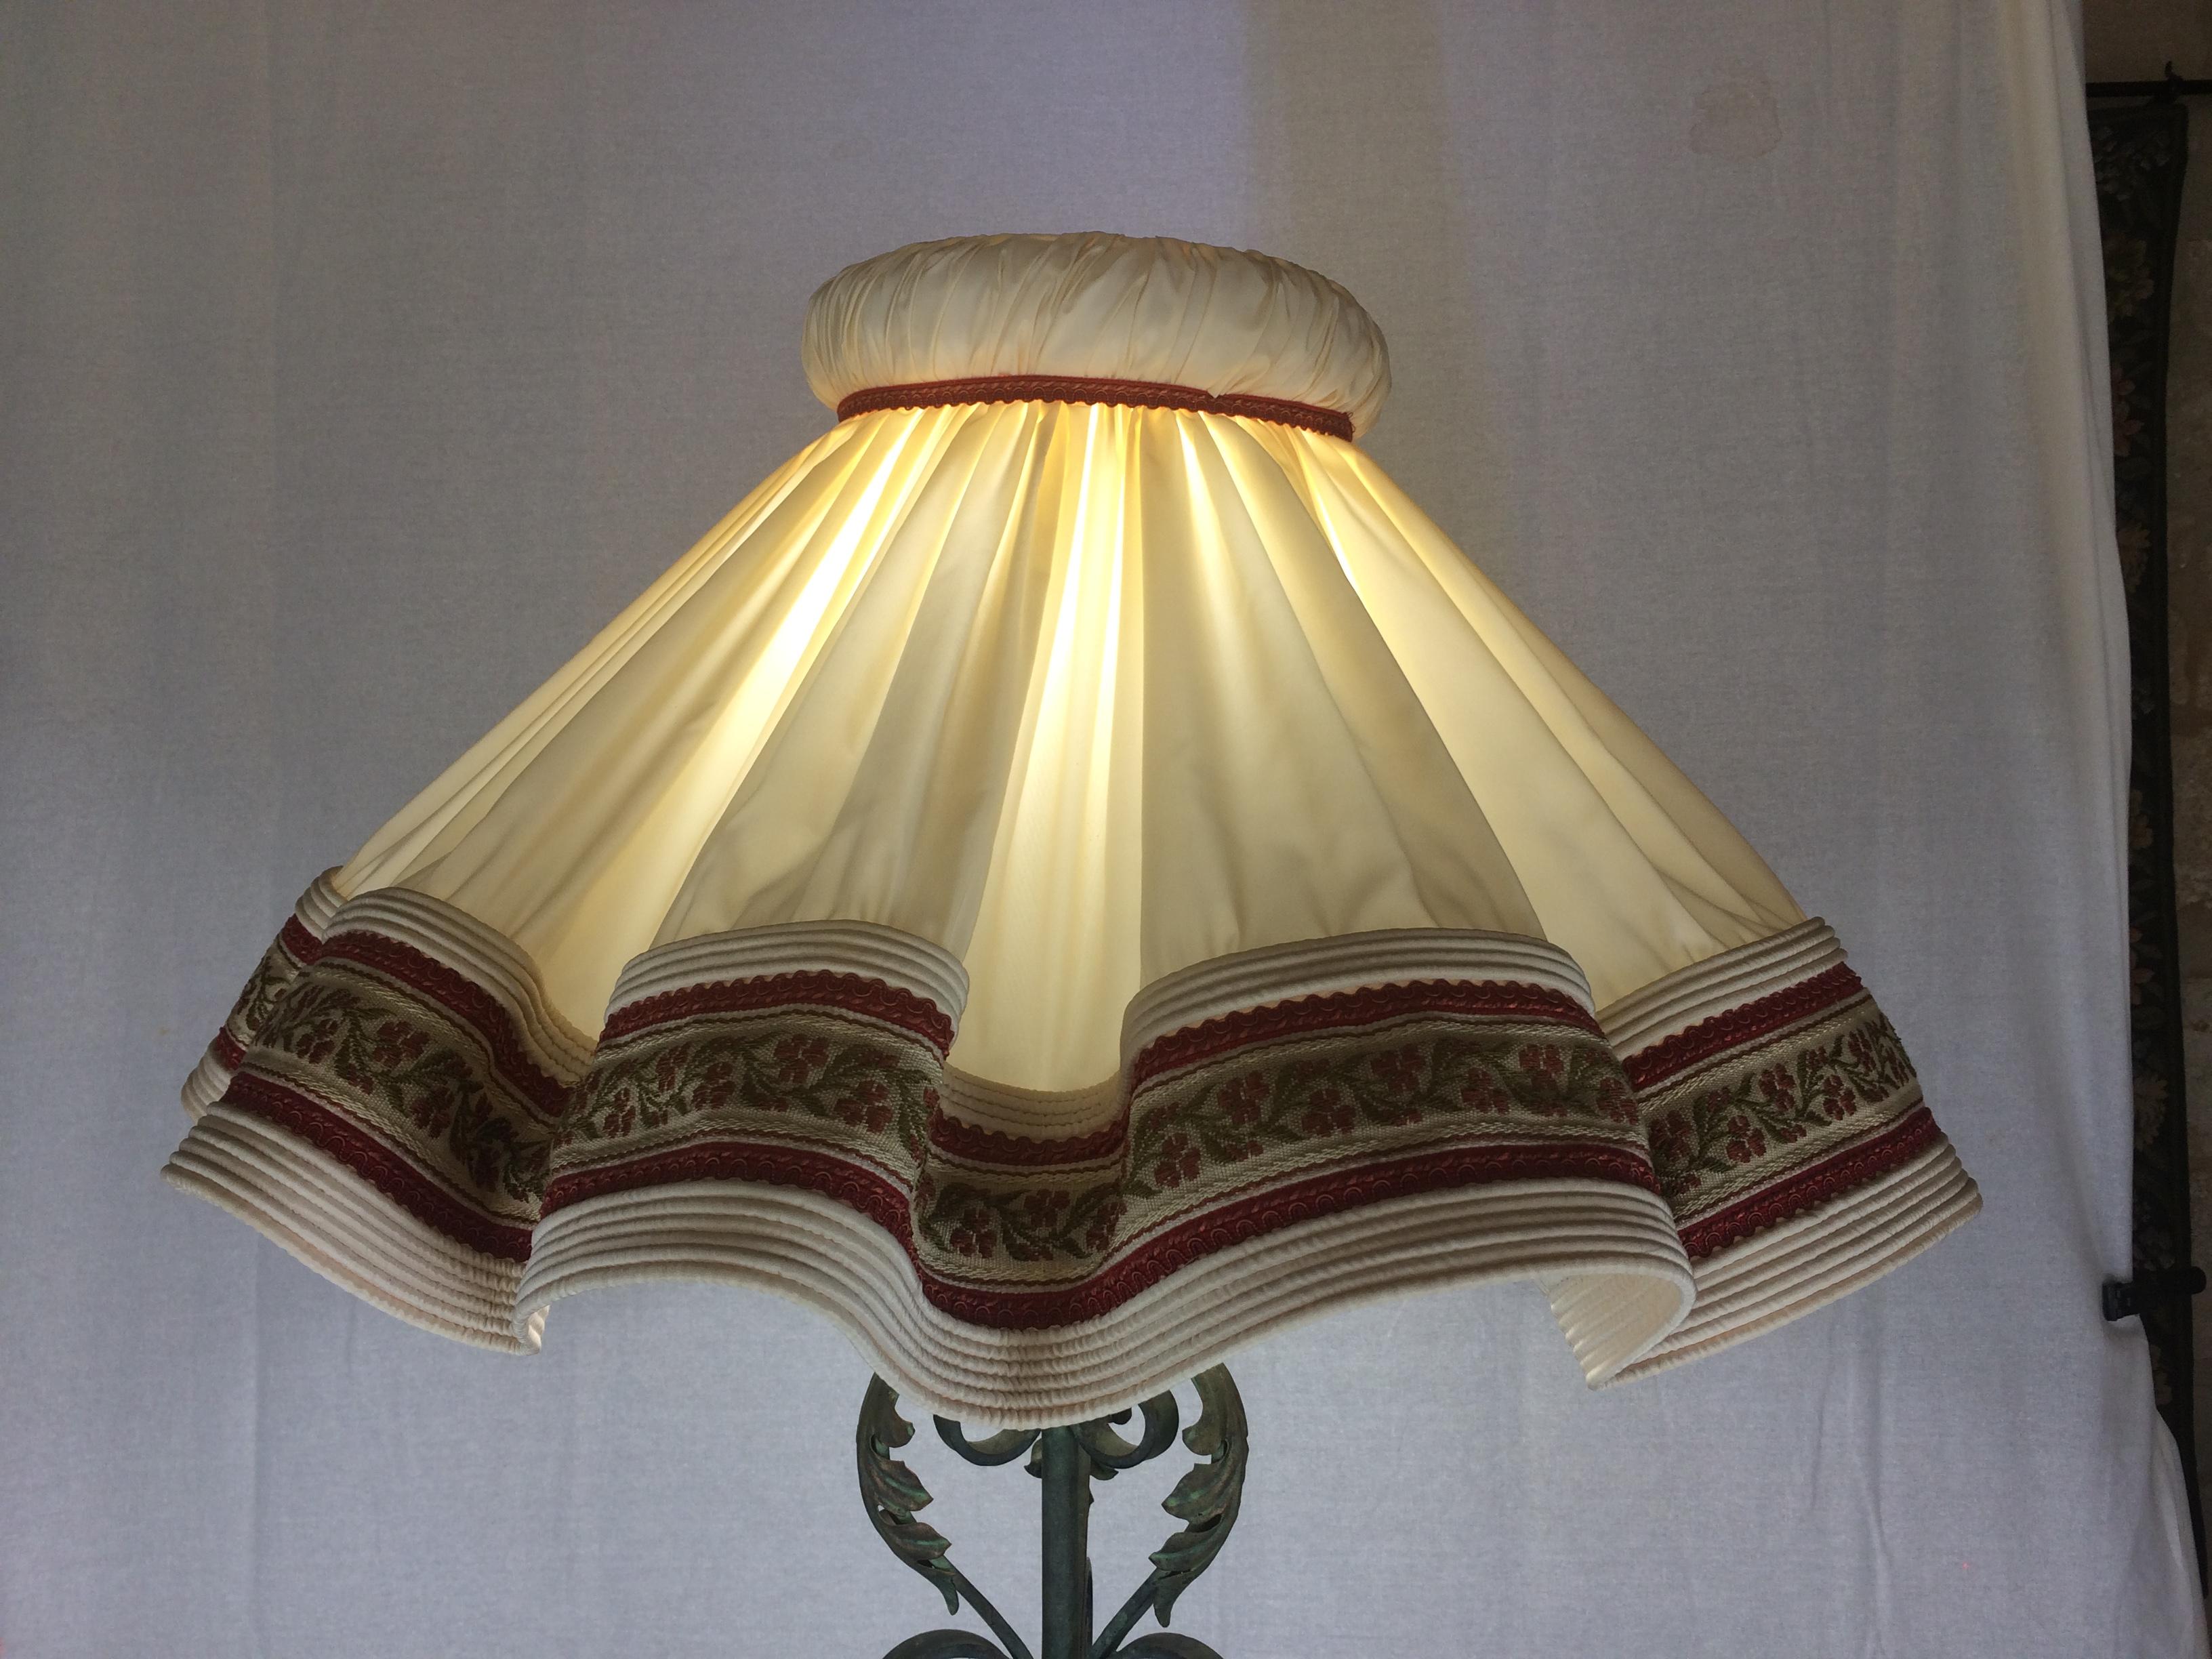 Eine sehr schöne, detailreiche Stehlampe, die dem französischen Designer Gilbert Poillerat aus der Zeit von 1920 bis 1949 zugeschrieben wird. Dieses schöne Stück erinnert an die Art Deco/Hollywood Regency-Lampen aus den großen Filmen dieser Zeit.